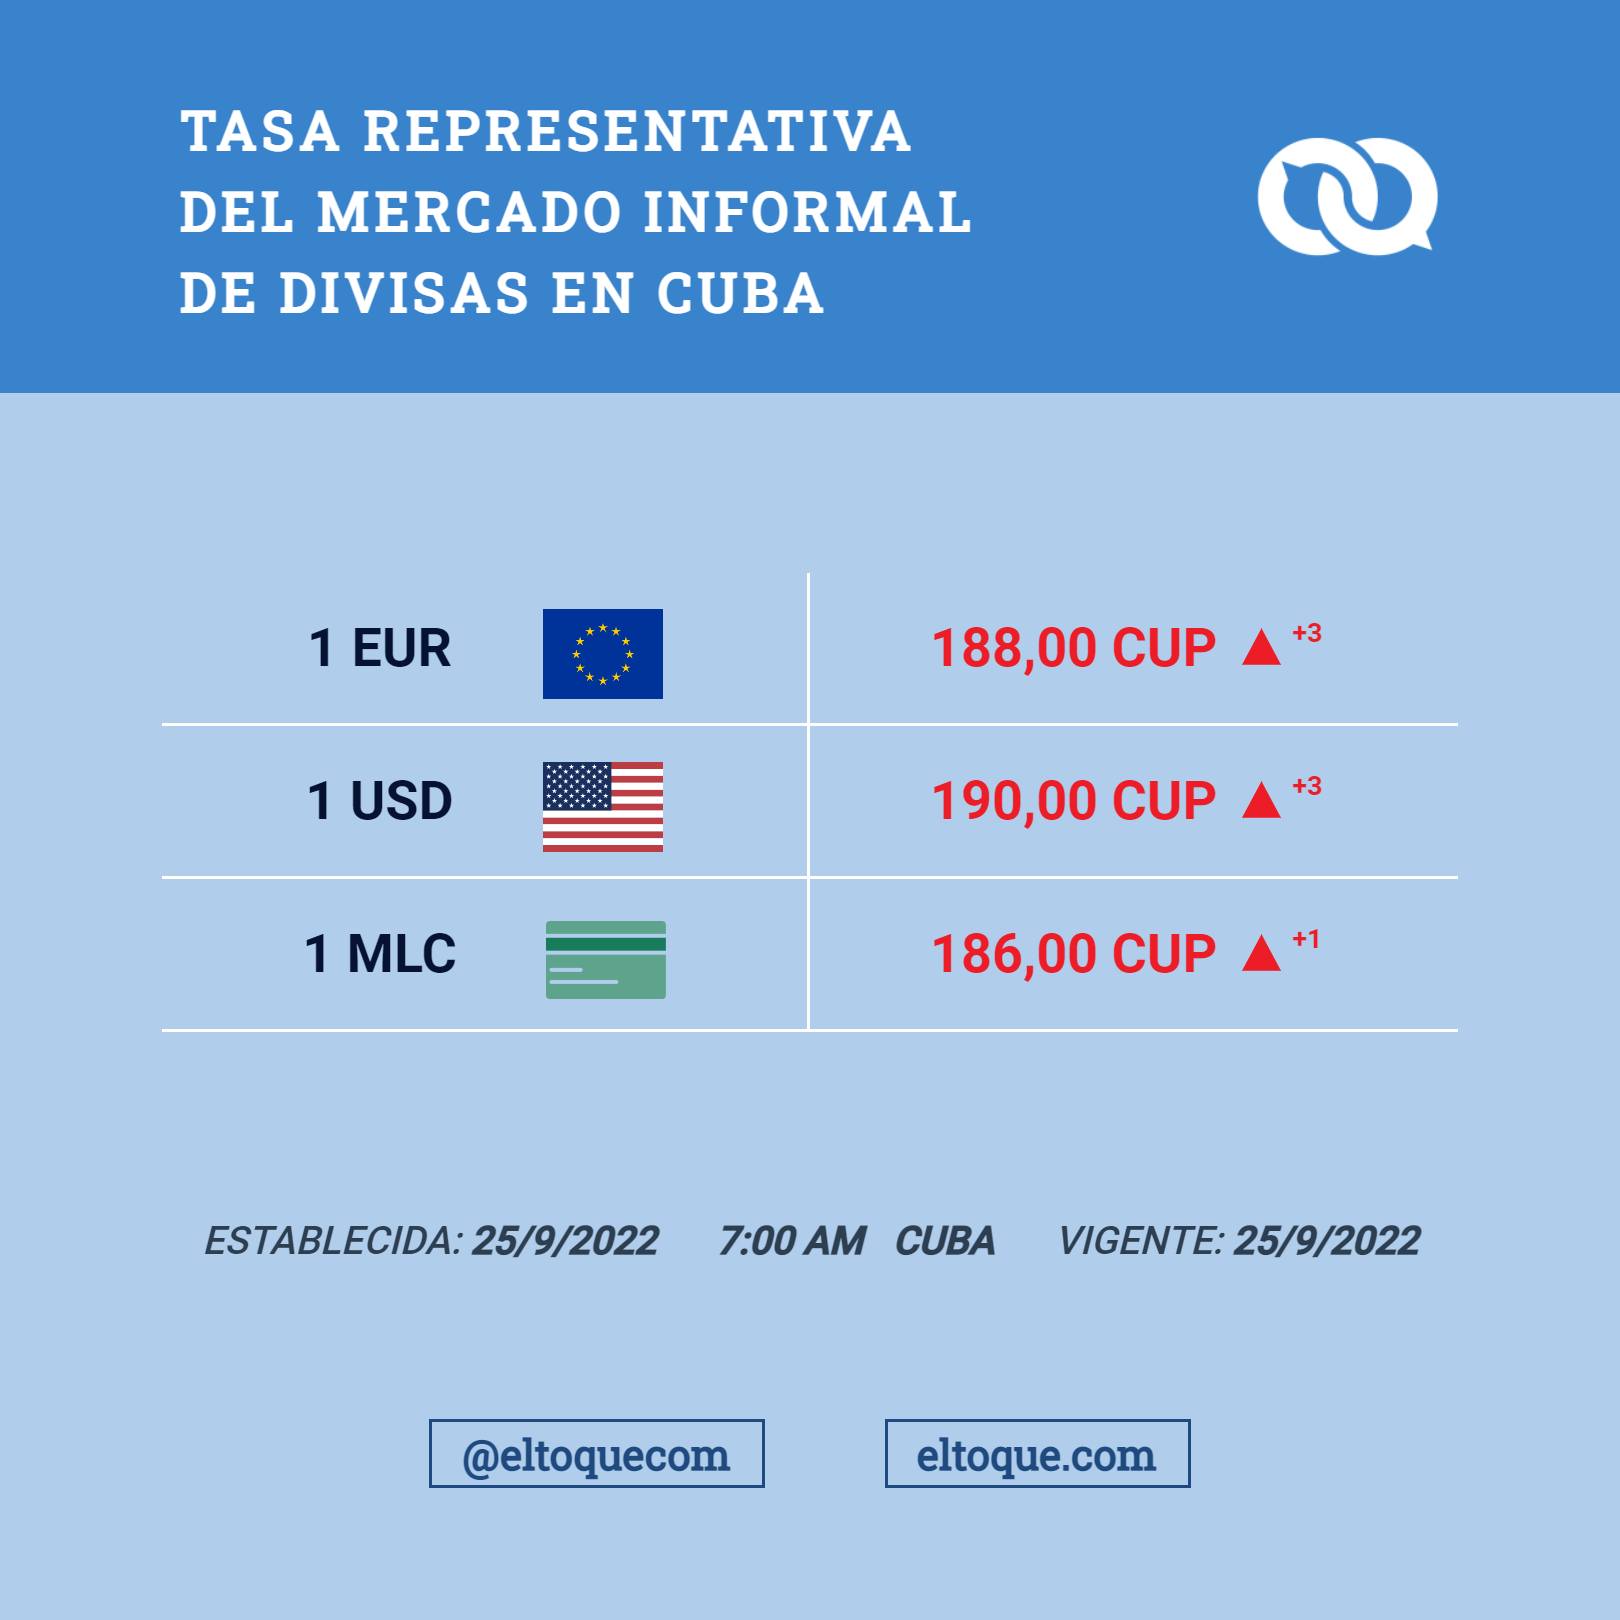 Tasa representativa del mercado informal de divisas en Cuba. El Toque